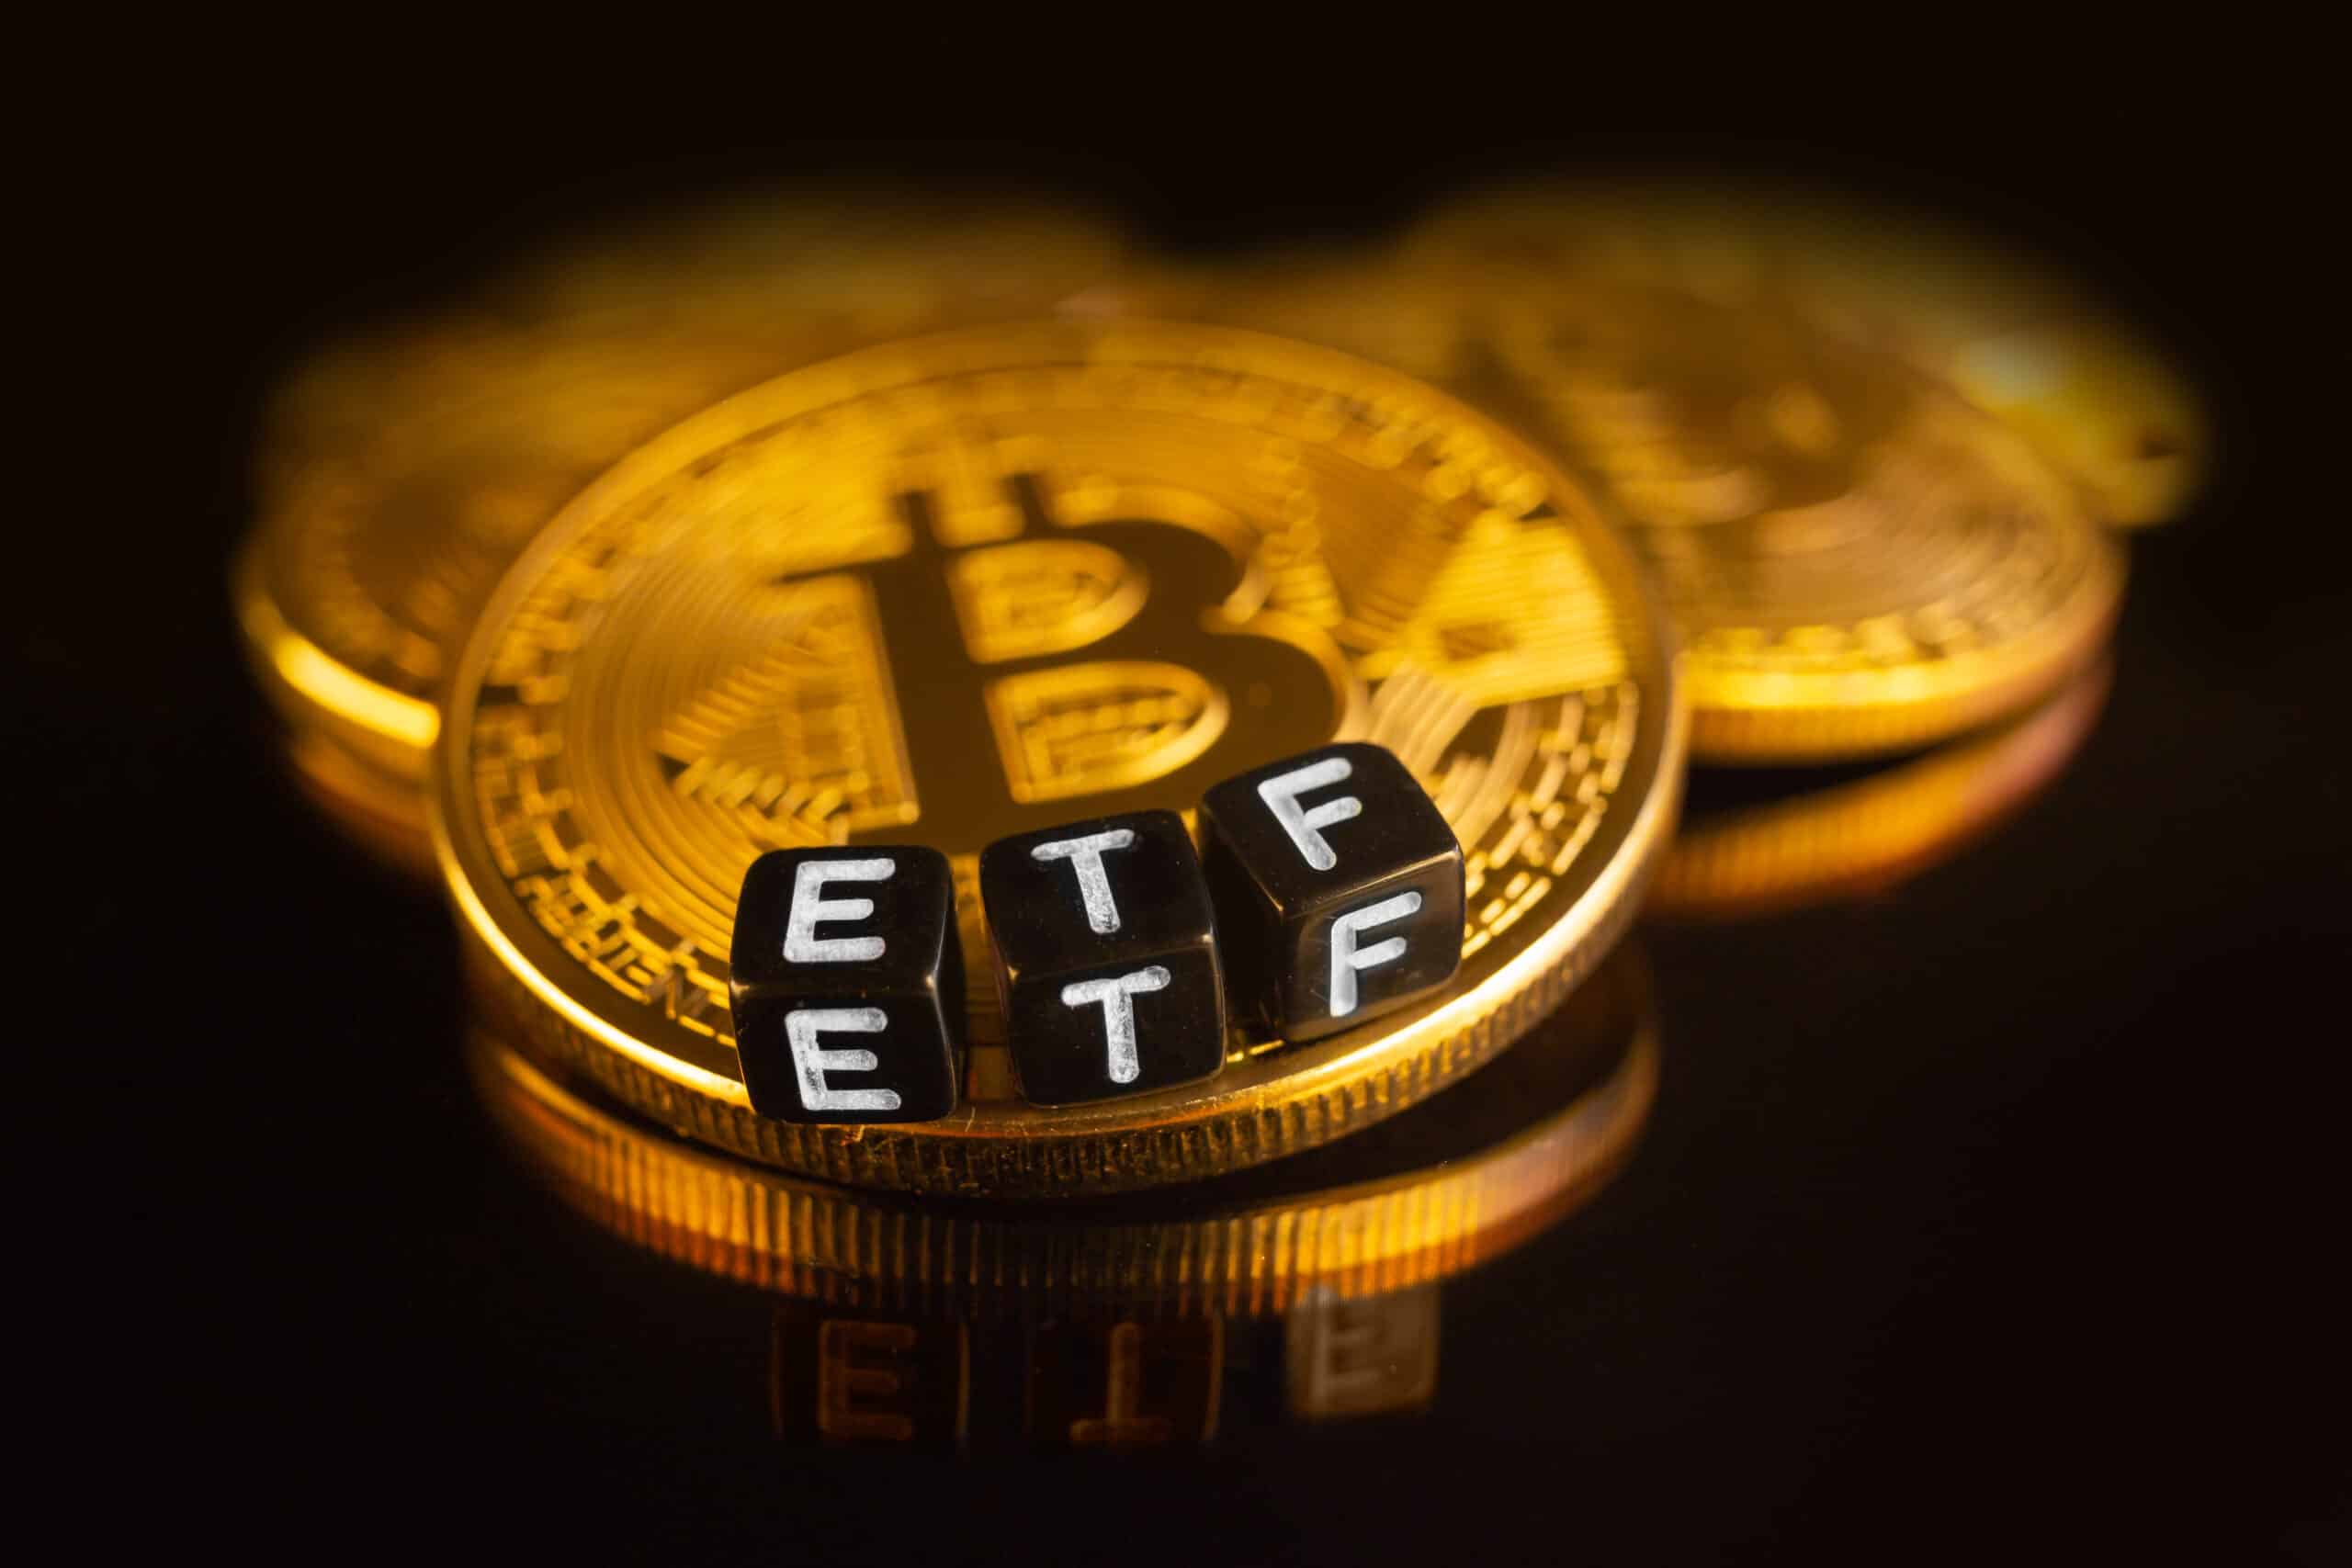 Spot Bitcoin ETF hiện được chấp thuận ở những quốc gia nào?